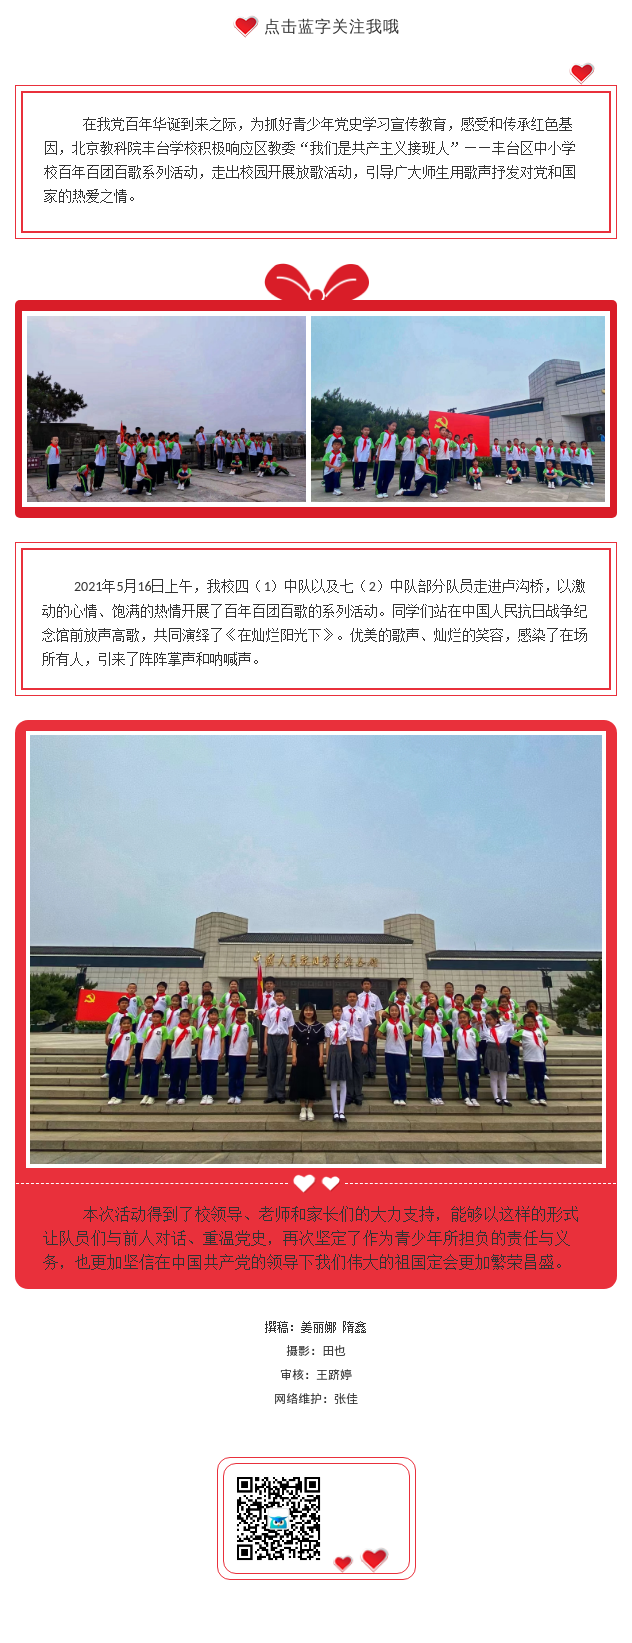 20210519歌唱祖国歌唱党，爱国精神共传承 ——北京教科院丰台学校“我们是共产主义接班人”百年百团百歌活动